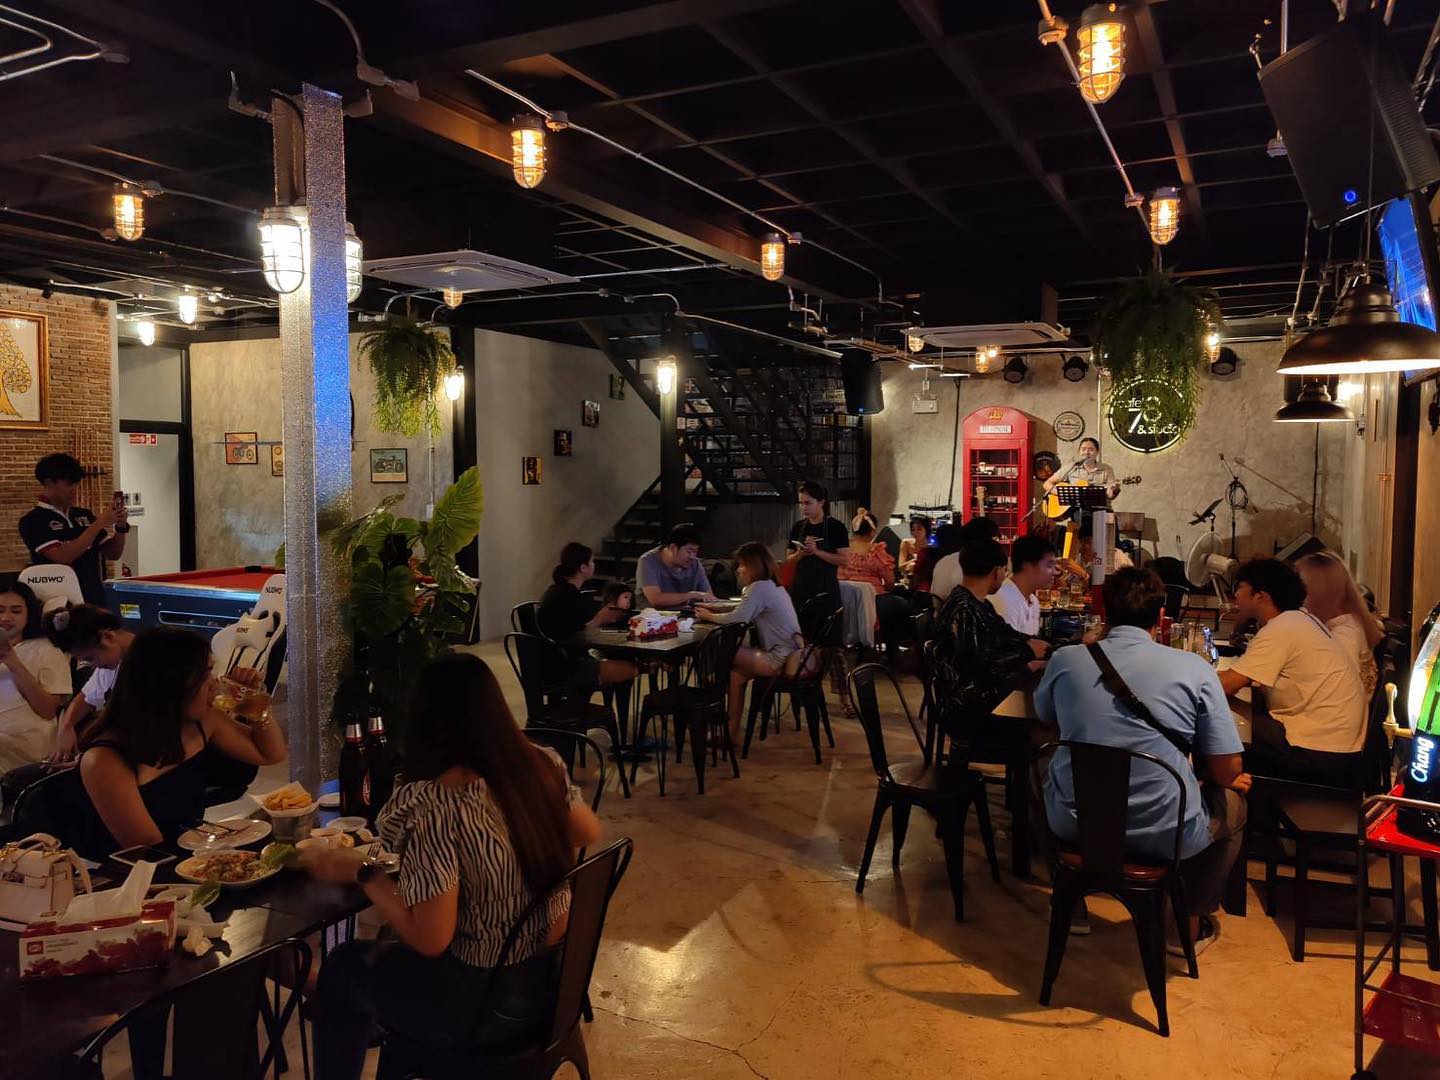 78 คาเฟ่ แอนด์ สตูดิโอ (78 Cafe' & Studio) : กรุงเทพมหานคร (Bangkok)